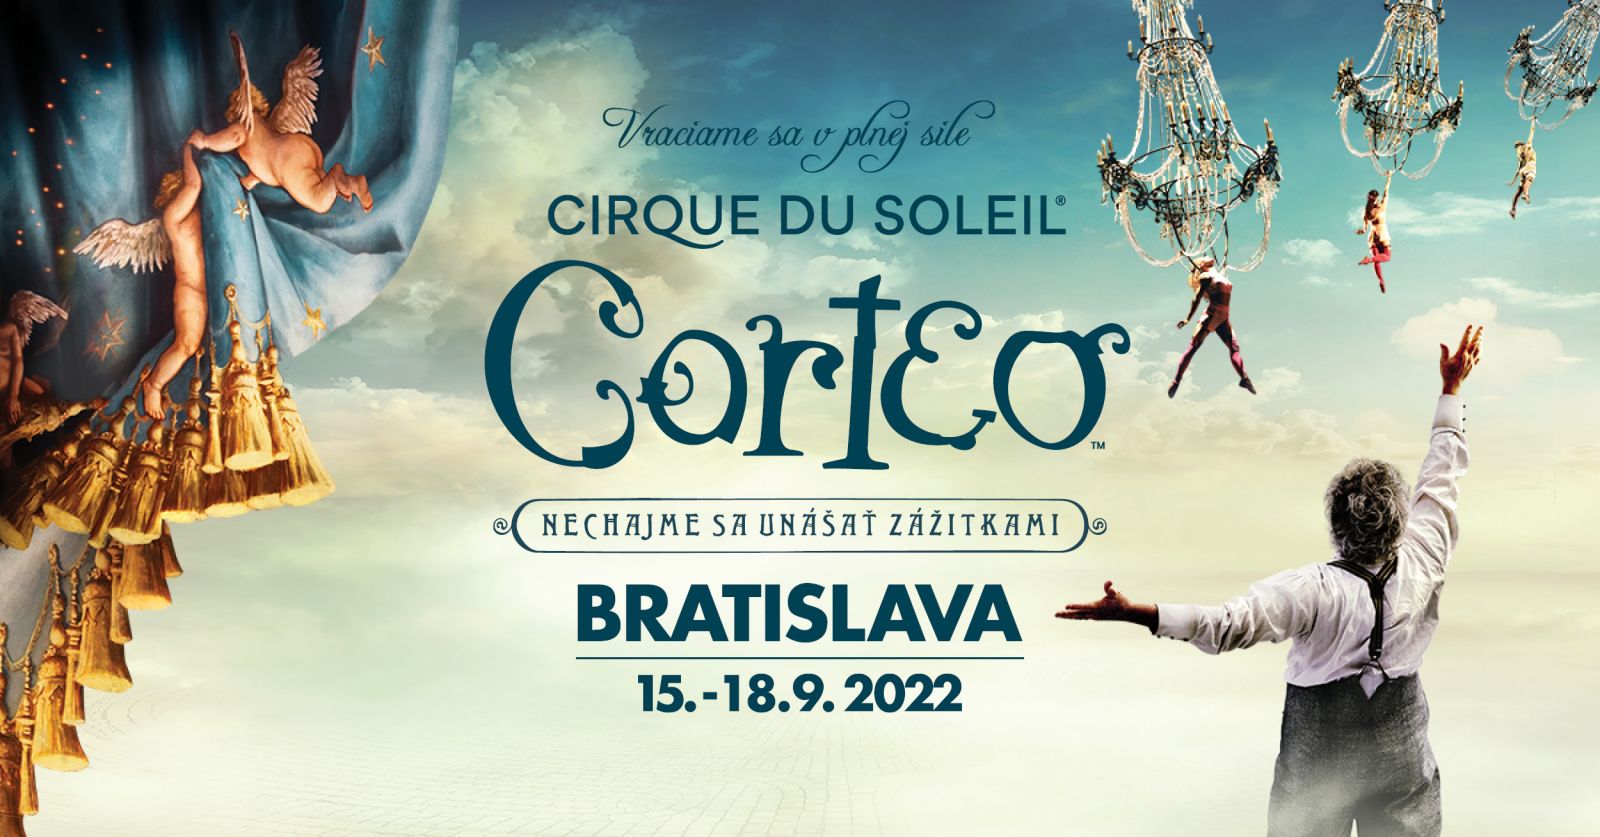 Video: Na Slovensko mieri Cirque du Soleil s predstavením Corteo 